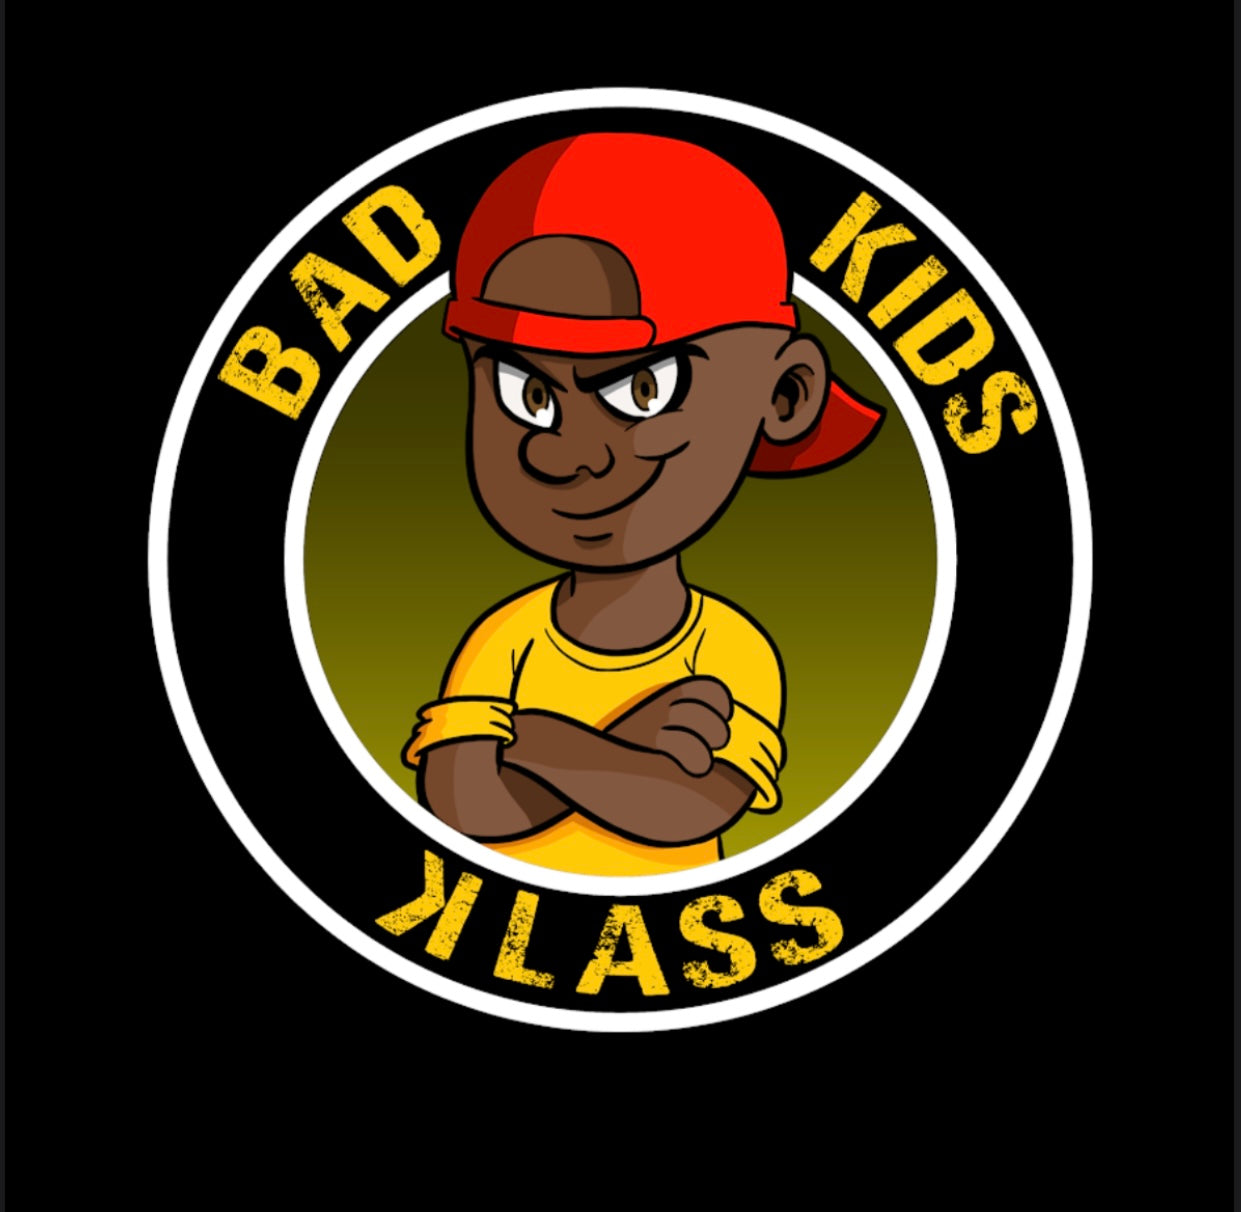 Bad kid  Bad kids, Character, Kids